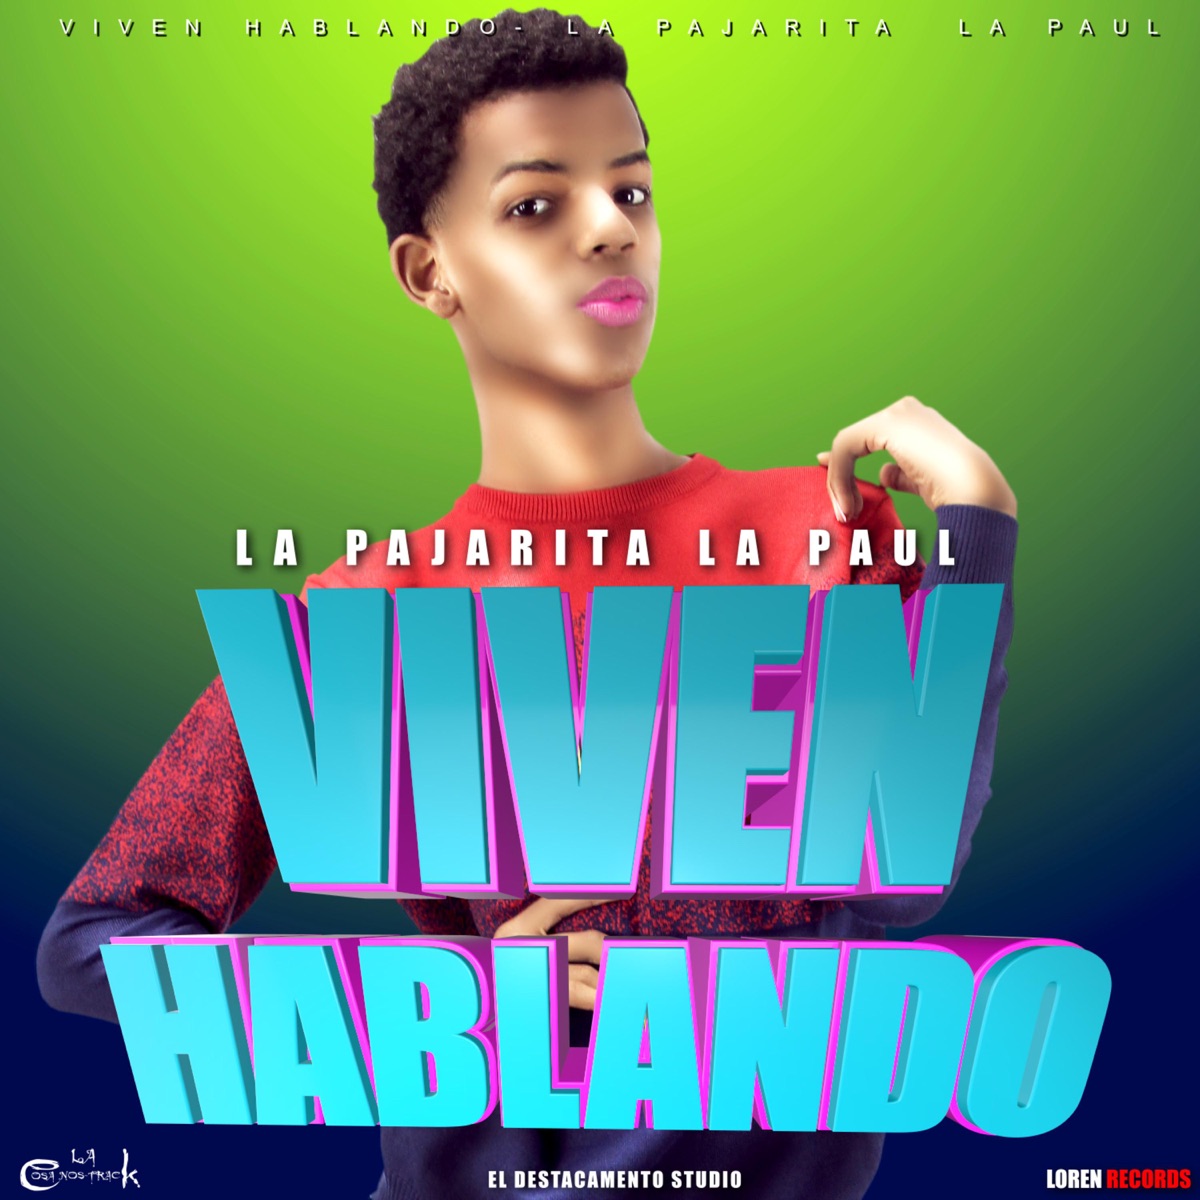 Hola Papi - Single de La Pajarita La Paul en Apple Music